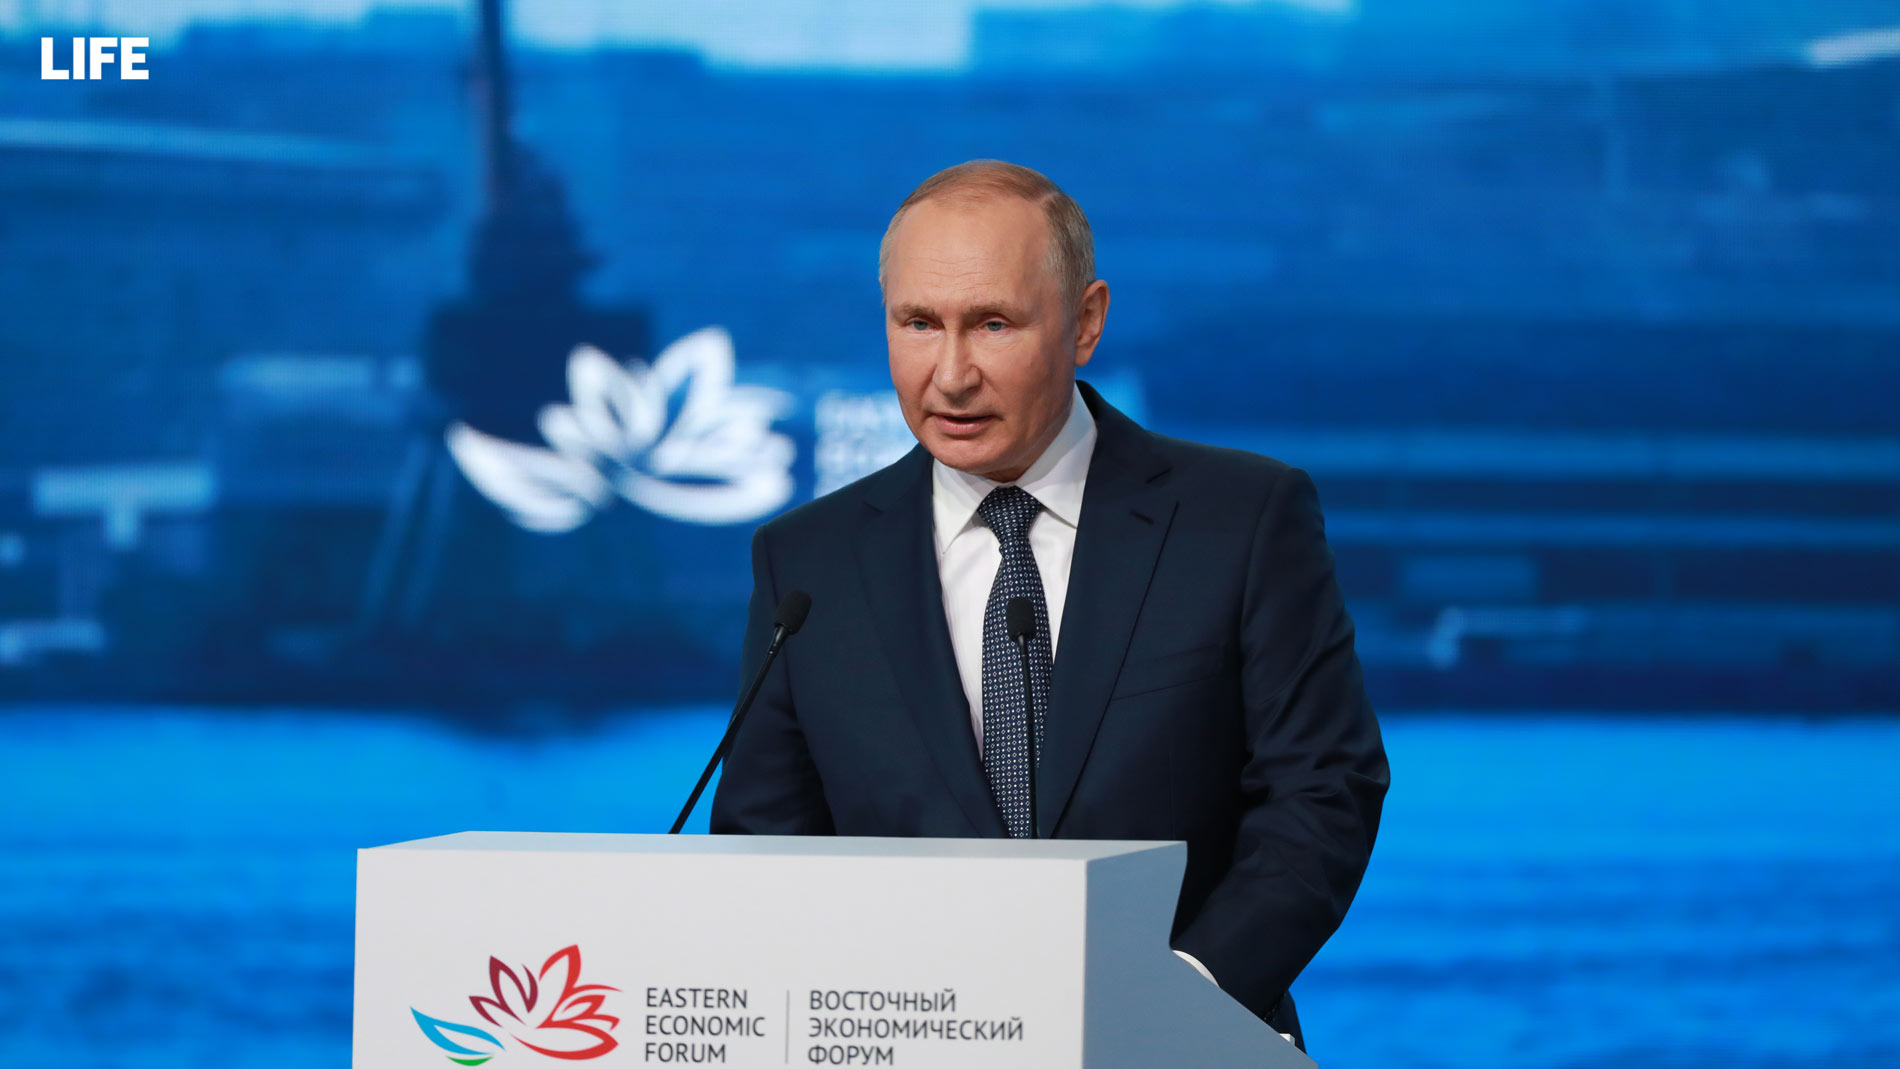 Из выступления Владимира Путина на пленарной сессии Восточного экономического форума. Фото © LIFE / Павел Баранов